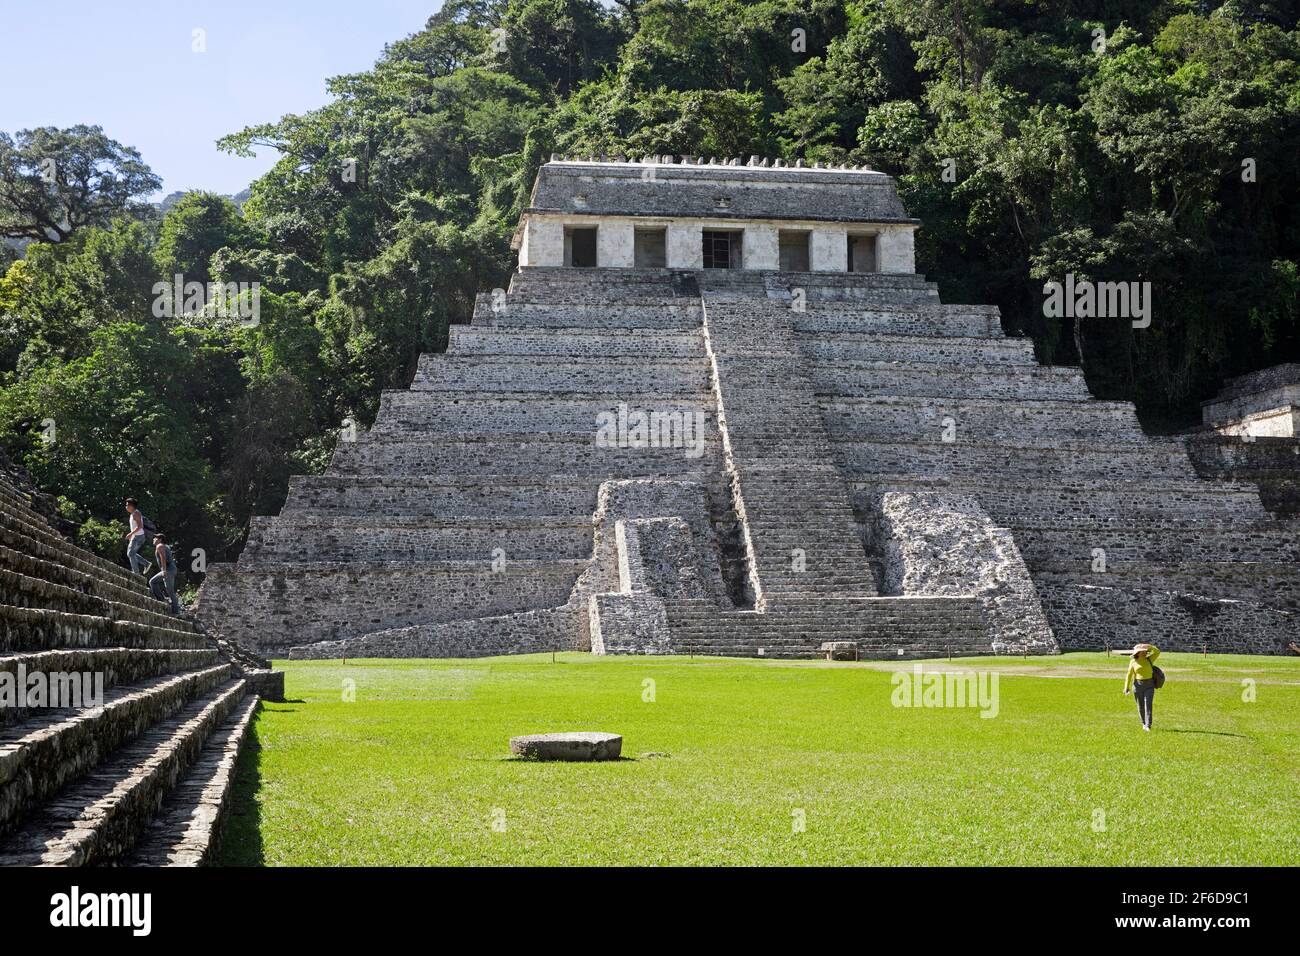 Tempio delle iscrizioni, la più grande struttura piramidale mesoamericana a gradini presso il sito di civiltà precolombiana Maya di Palenque, Chiapas, Messico Foto Stock